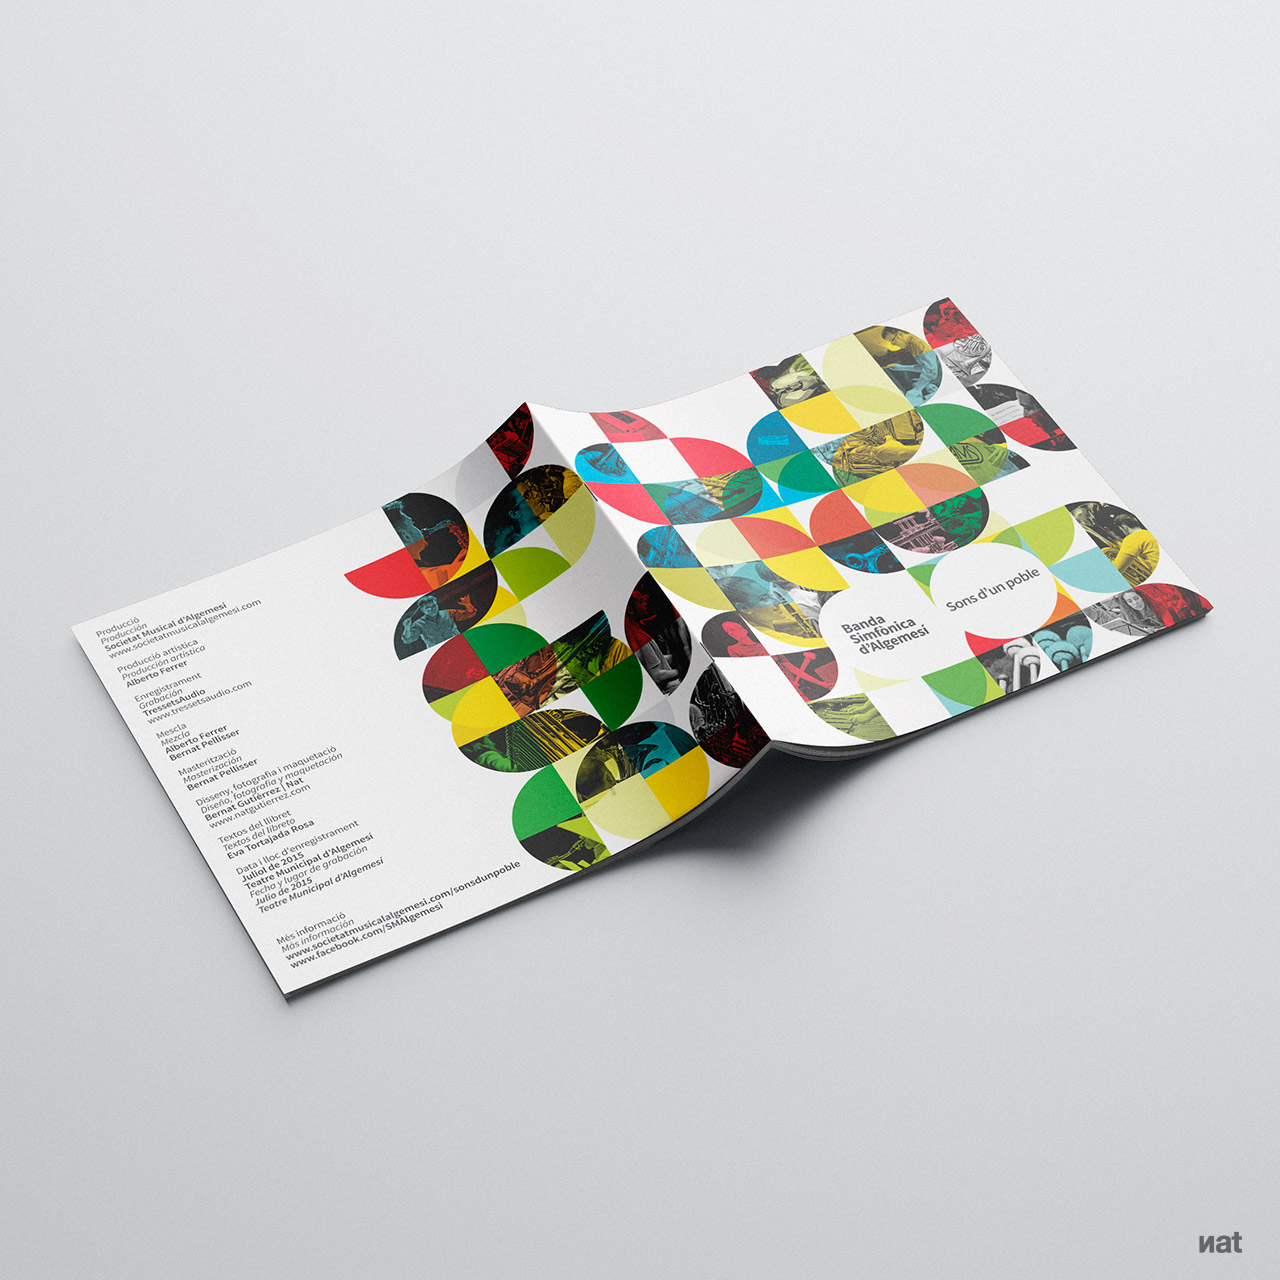 Diseño y fotografía para el disco CD 'Sons d'un poble' de la Banda Simfònica d'Algemesí. Diseño y fotografía de Nat Estudi.